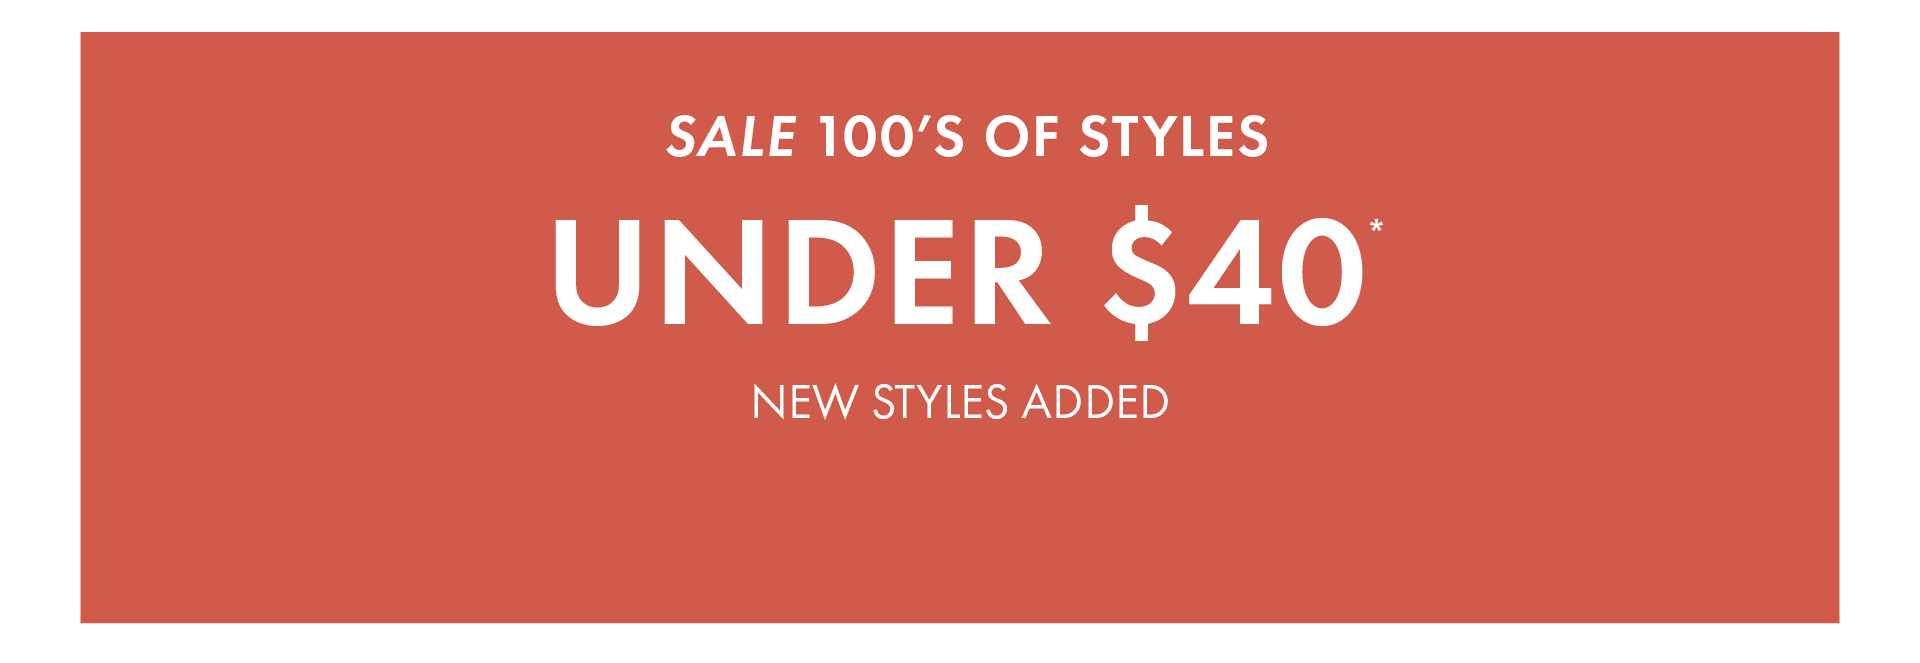 Sale Styles under $40